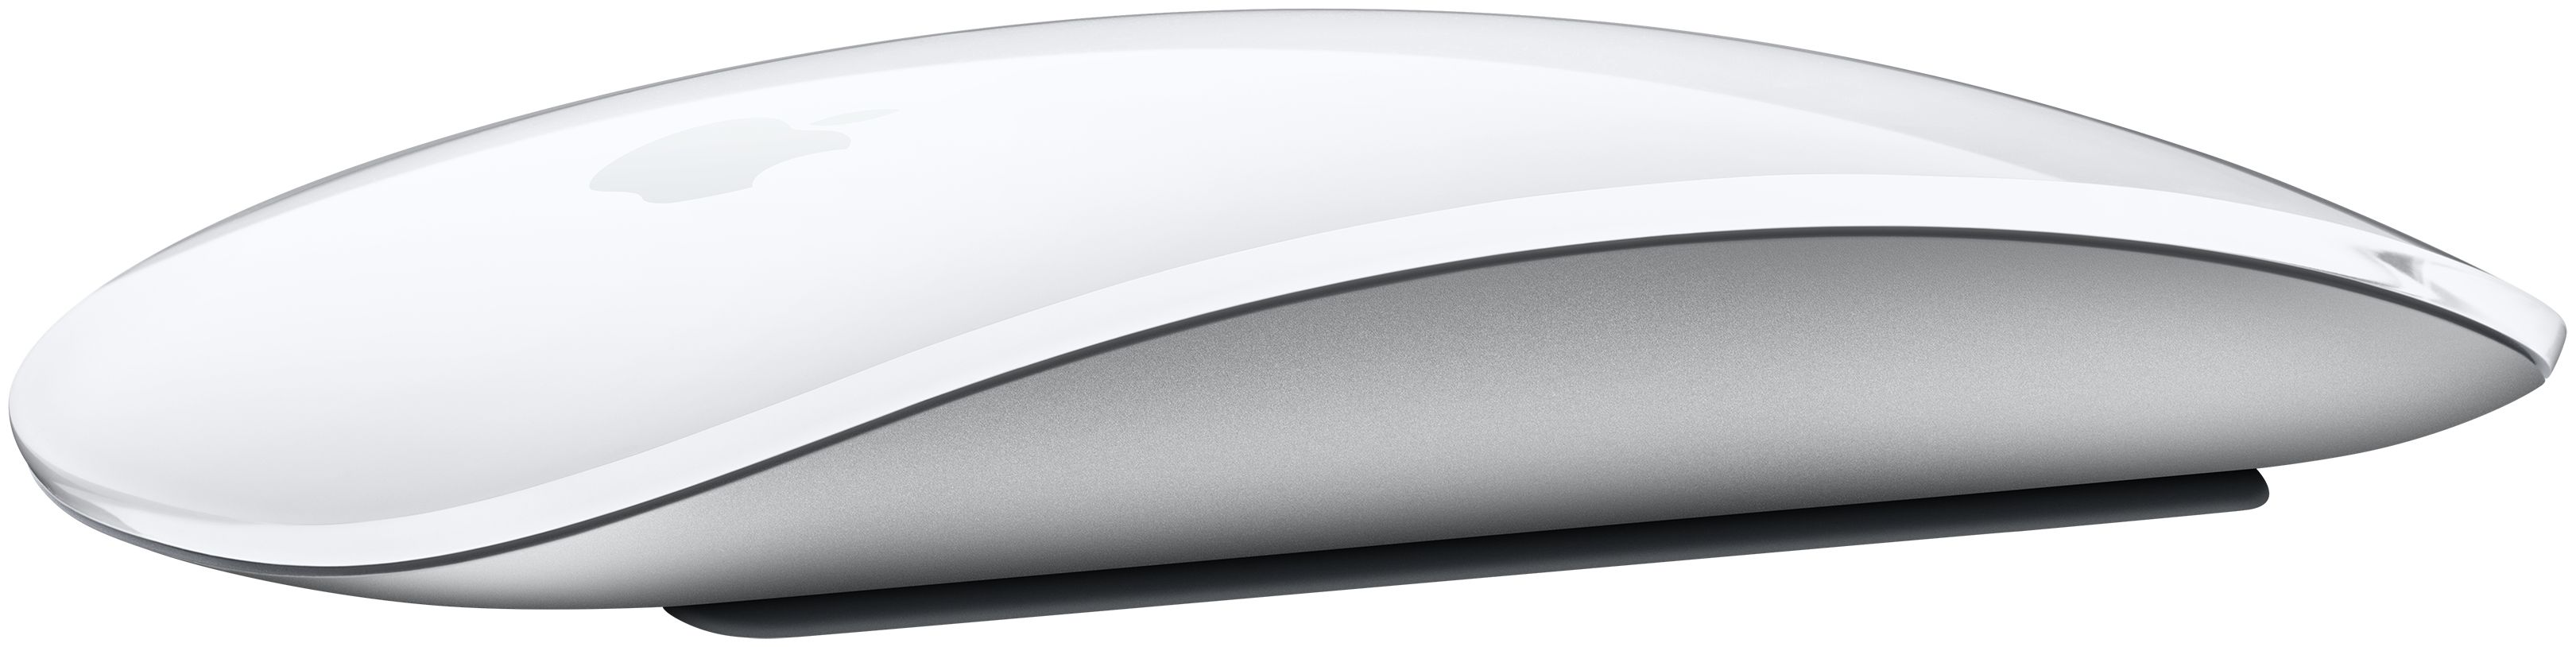 Apple Magic Mouse Büro Maus (Weiß) von expert Technomarkt